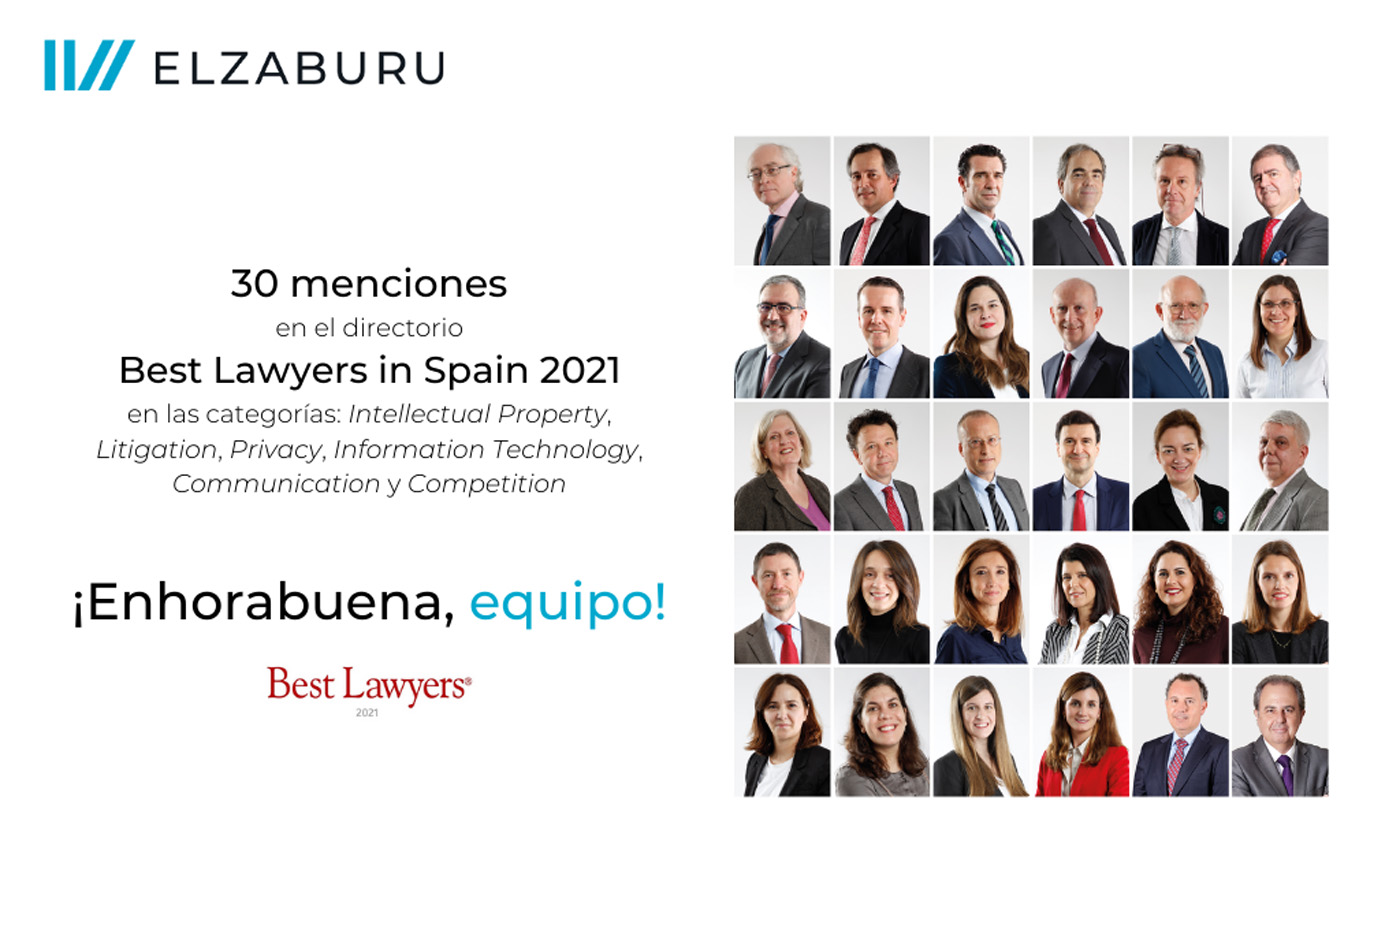 elzaburu 在 30 年西班牙最佳律师名录中，在知识产权、诉讼、隐私、信息技术、通信和竞争等类别中获得 2021 次提及